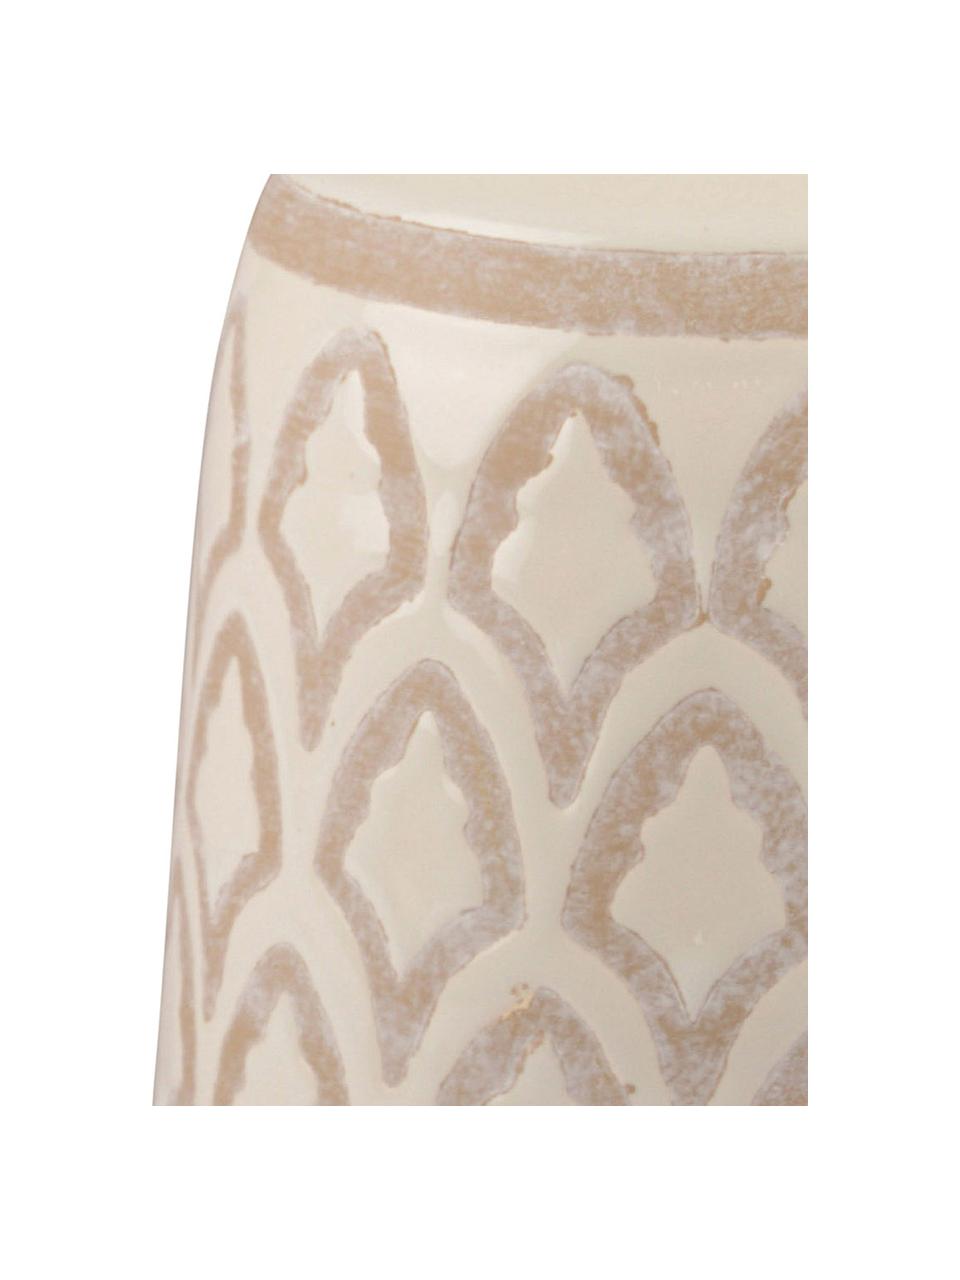 Vase en céramique Rustica, Couleur crème, beige